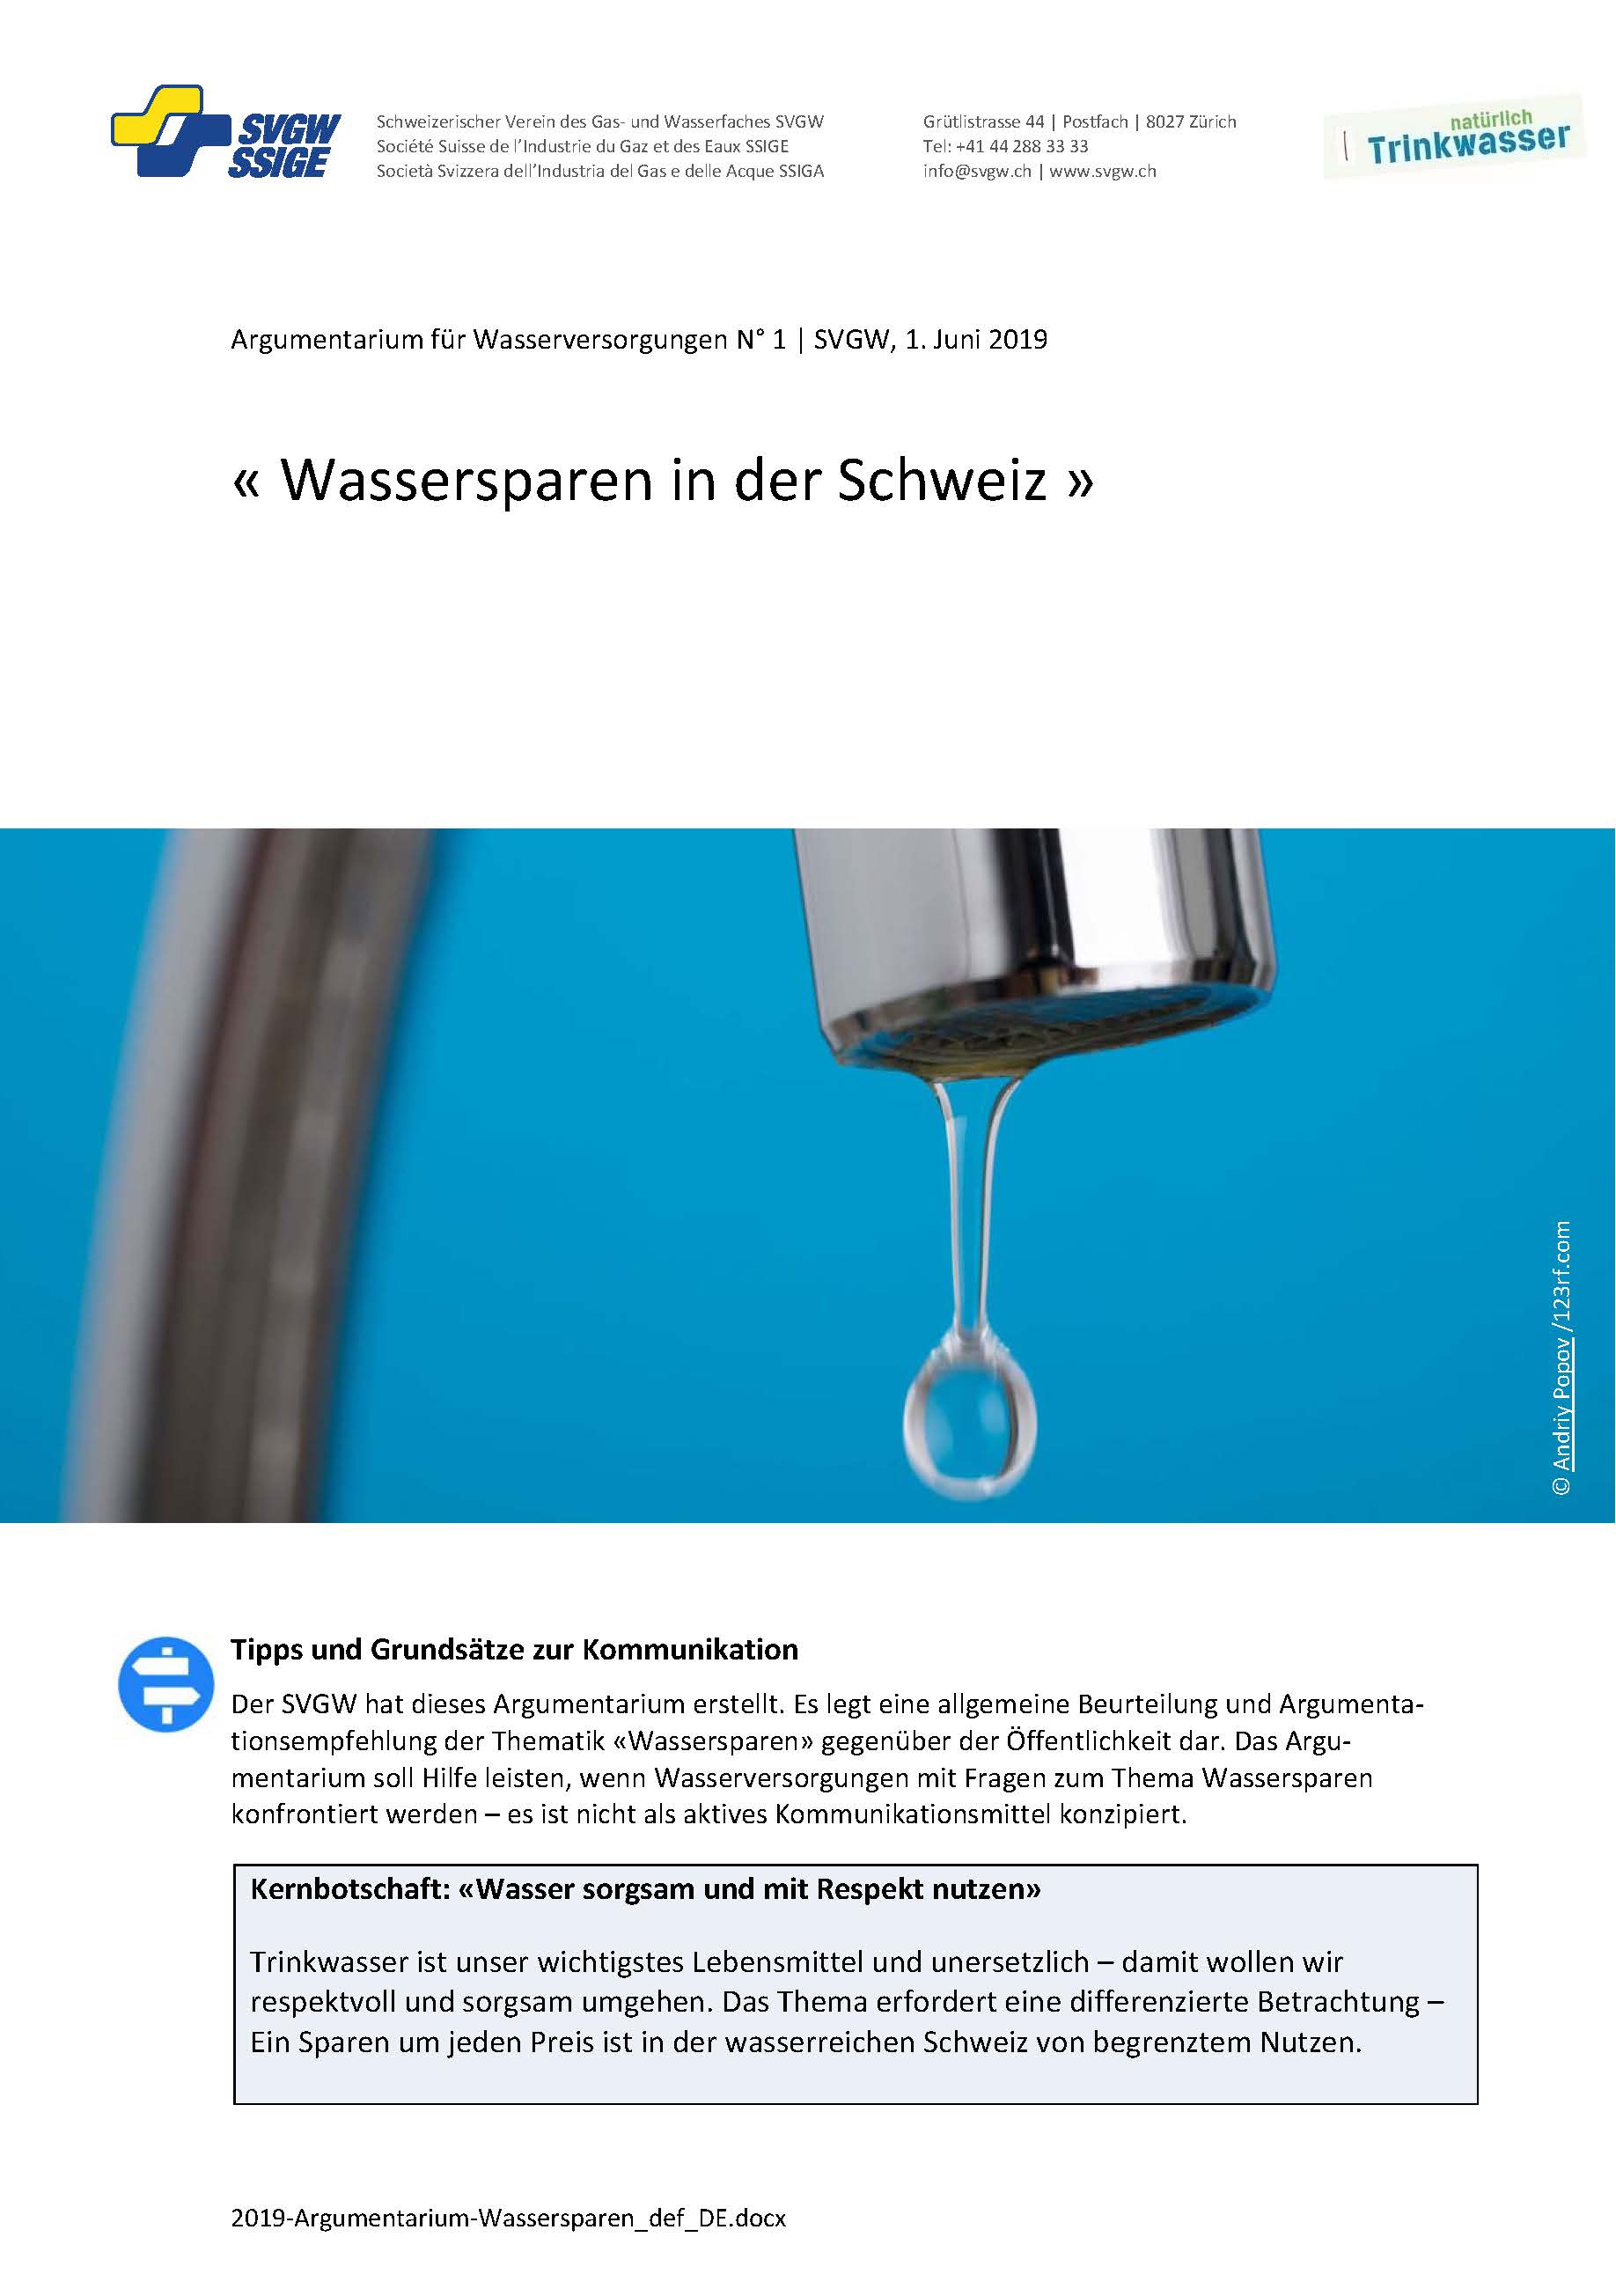 Argumentarium: «Wassersparen in der Schweiz»